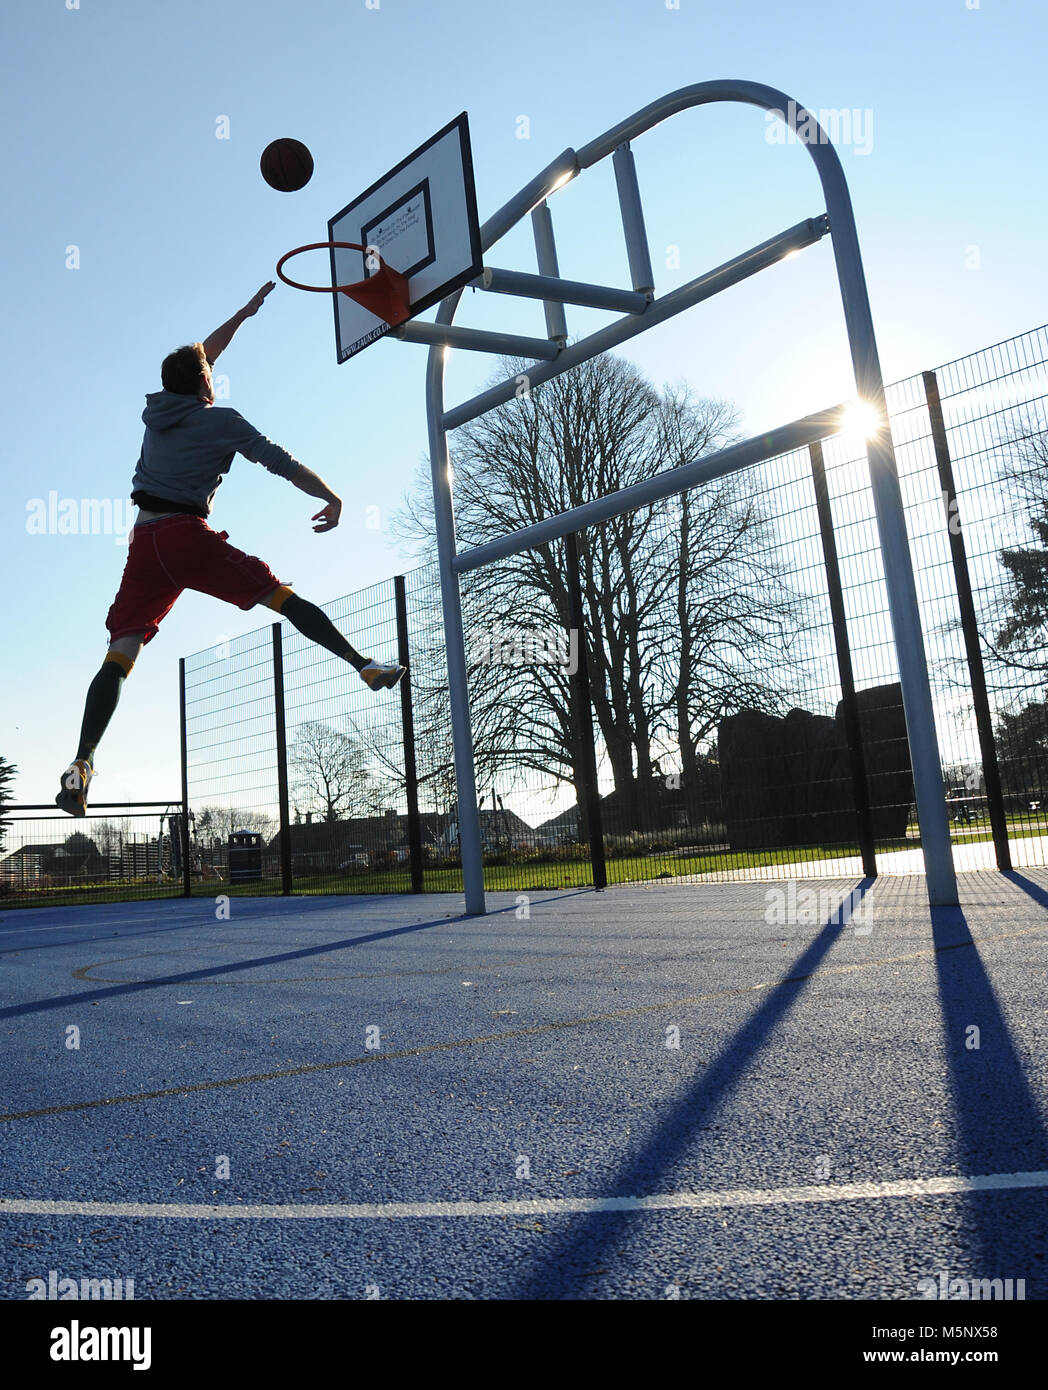 Einen Outdoor Shooting für ein Basketballspieler in Devizes, Wiltshire. In  natürlichem Sonnenlicht Schuß auf einen Basketballplatz. Breite Tiefe von  eingereicht, gute Beleuchtung Stockfotografie - Alamy